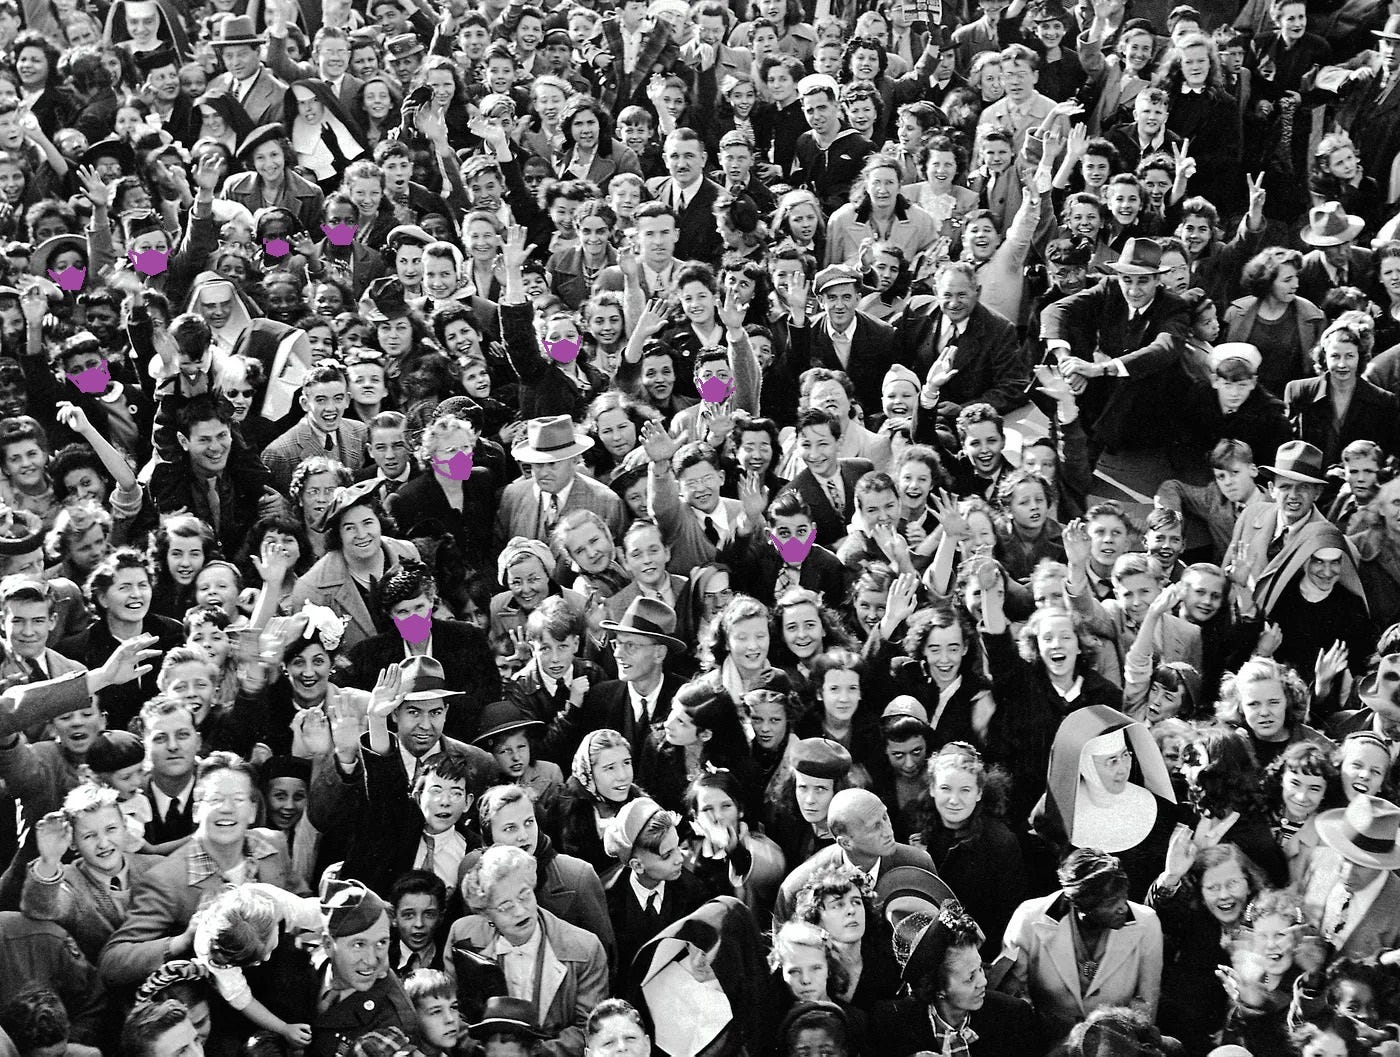 Photo en noir et blanc d’une foule de gens qui saluent la caméra en souriant, parmi elles et eux de rares personnes portent un masque qui ressort de l’image en étant coloré en violet.